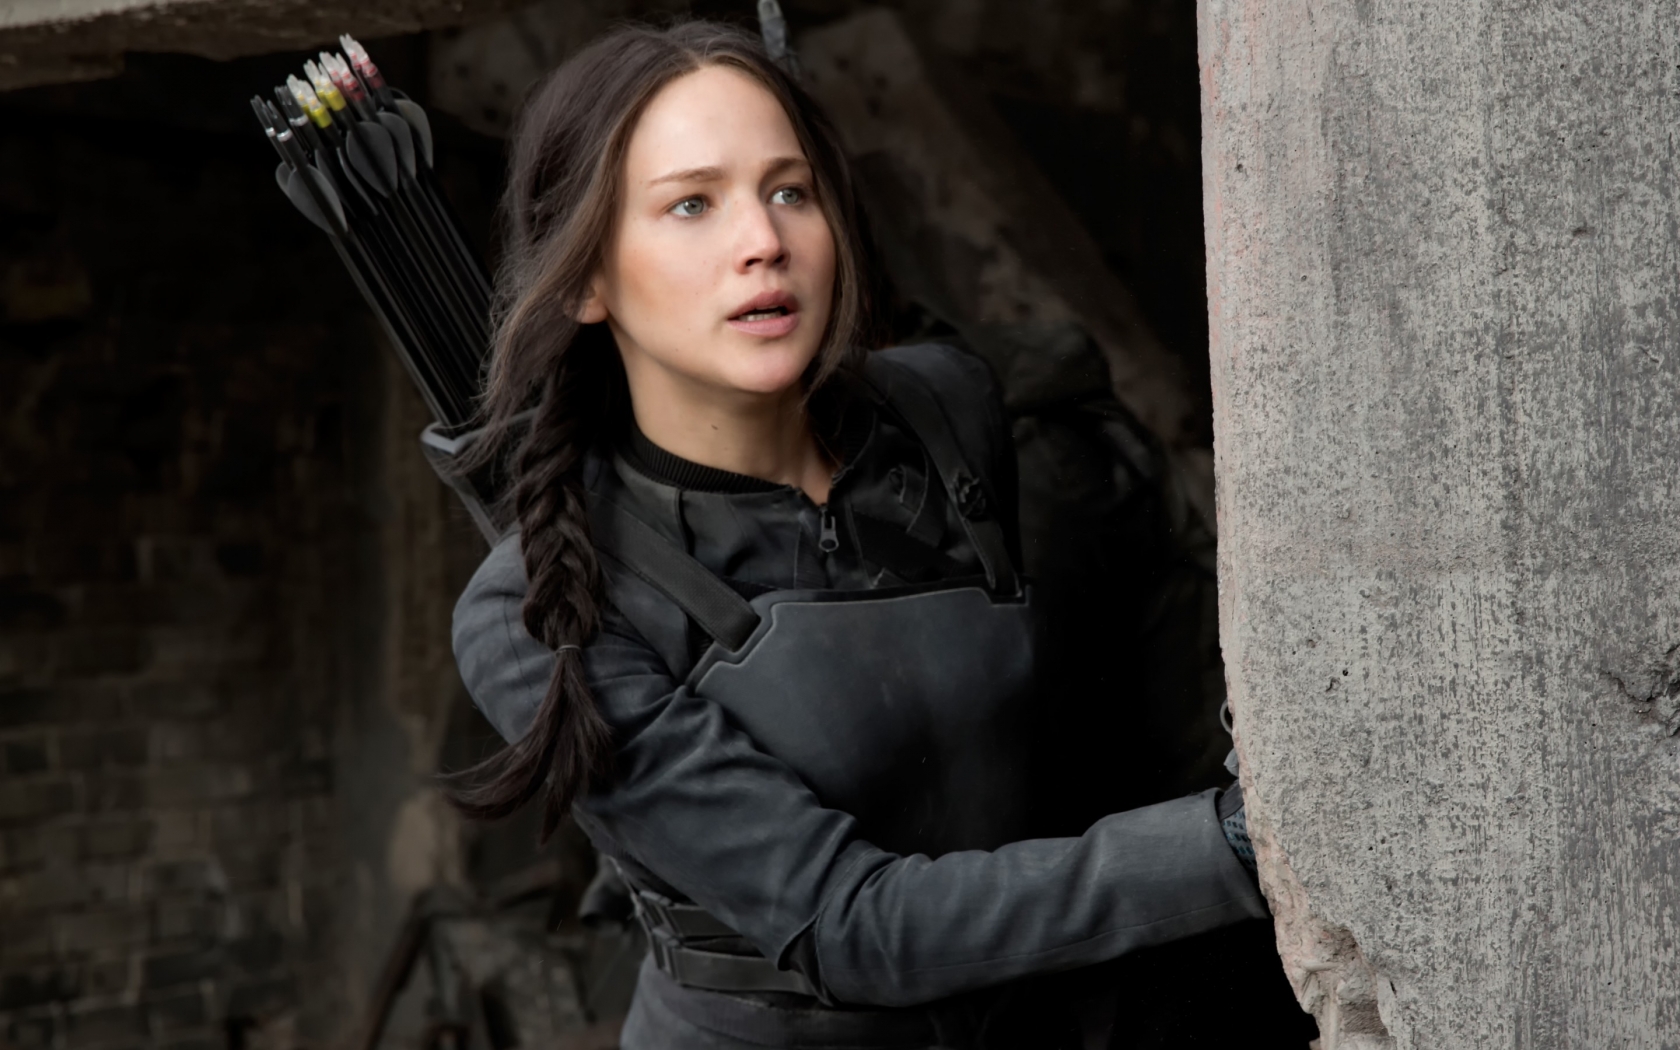 Jennifer Lawrence as Katniss Everdeen for 1680 x 1050 widescreen resolution